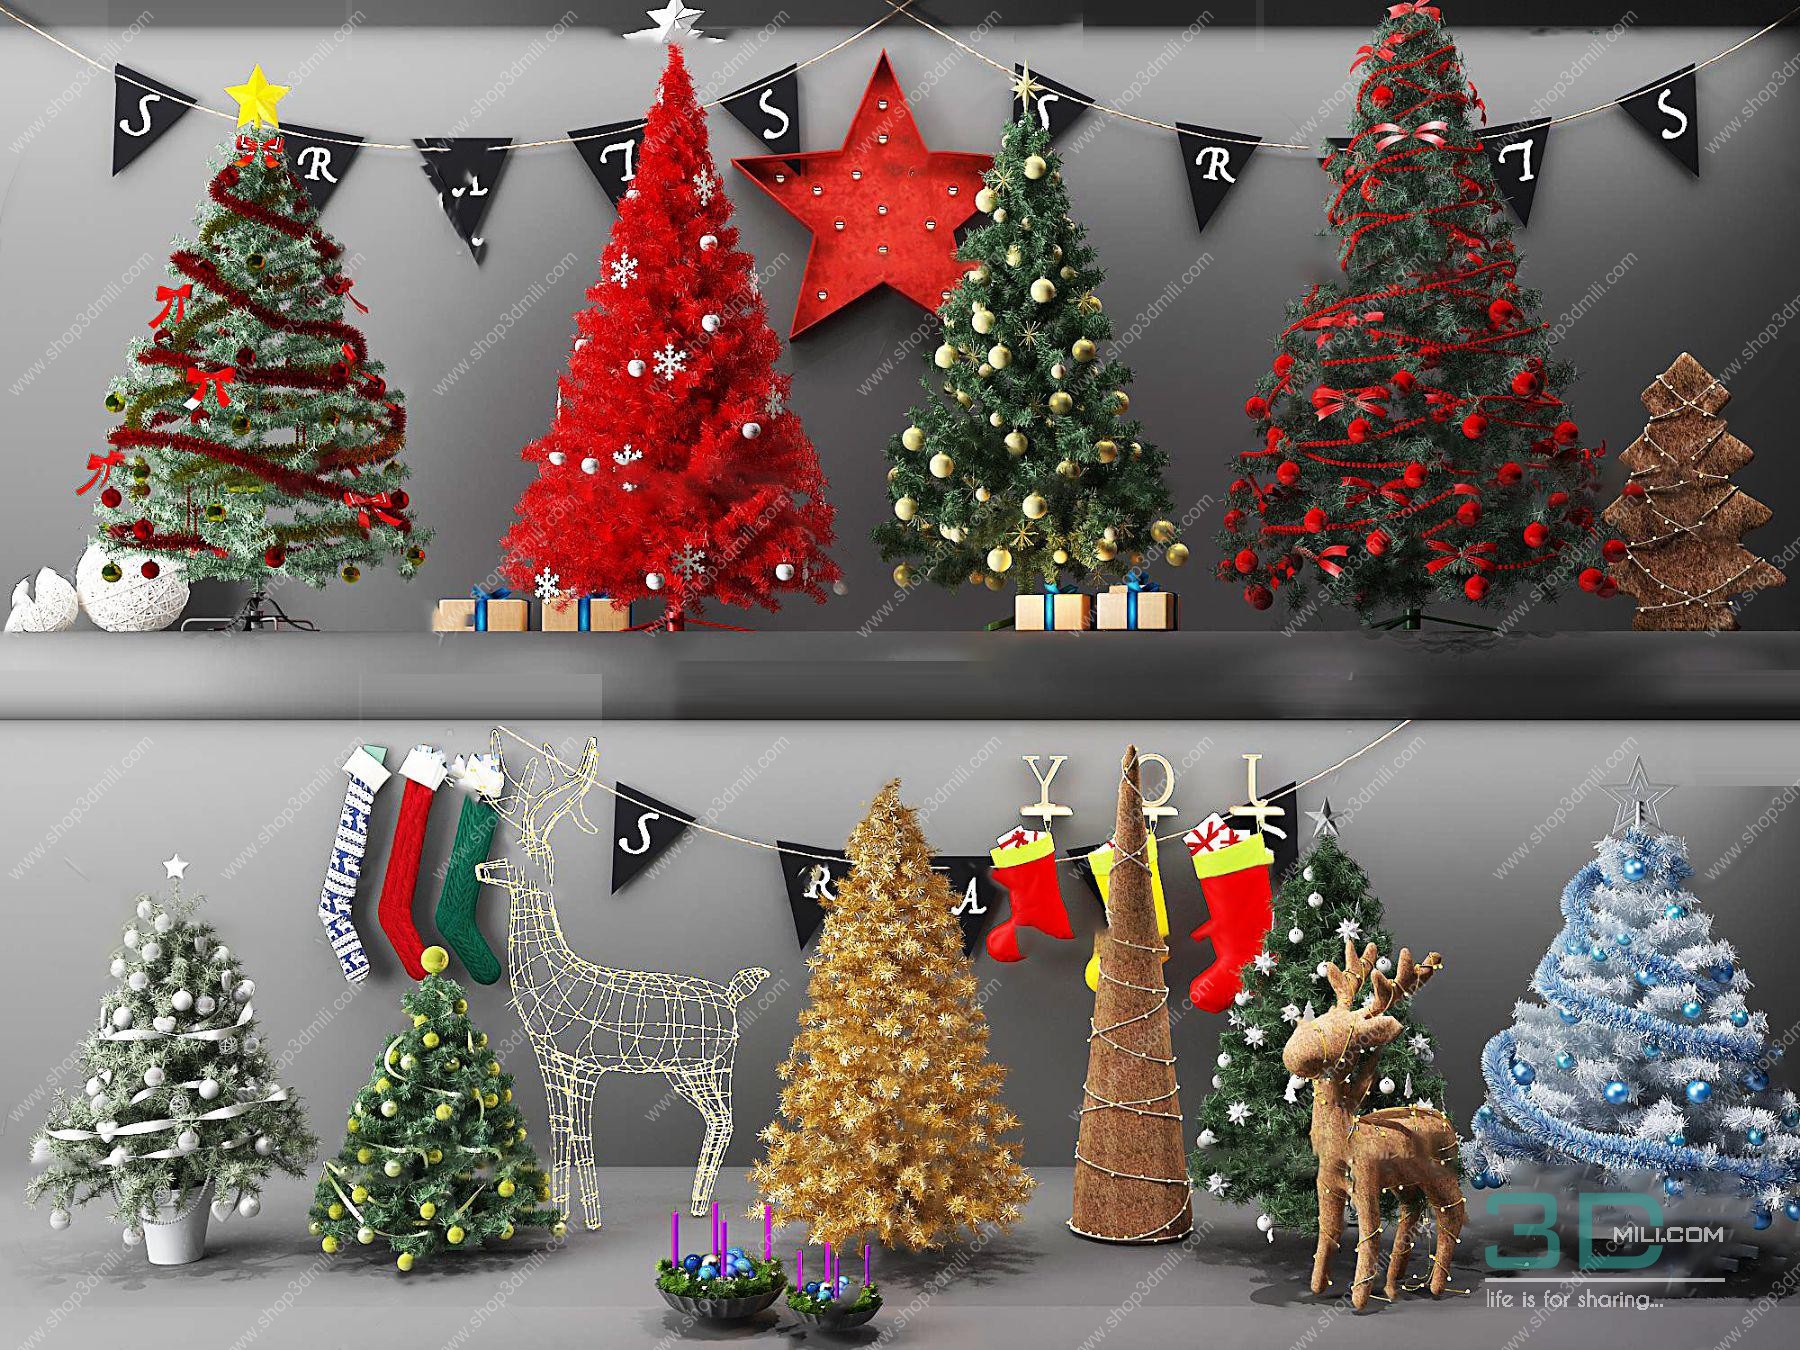 Giáng sinh đến rồi và không gian của bạn chắc chắn không thể thiếu một cái cây noel lung linh, đầy màu sắc. Decorated Christmas Tree Free Download là sự lựa chọn tuyệt vời để bạn có thể tải về hoàn toàn miễn phí. Hãy cùng tạo nên một không gian Giáng sinh tràn đầy niềm vui và hạnh phúc. 